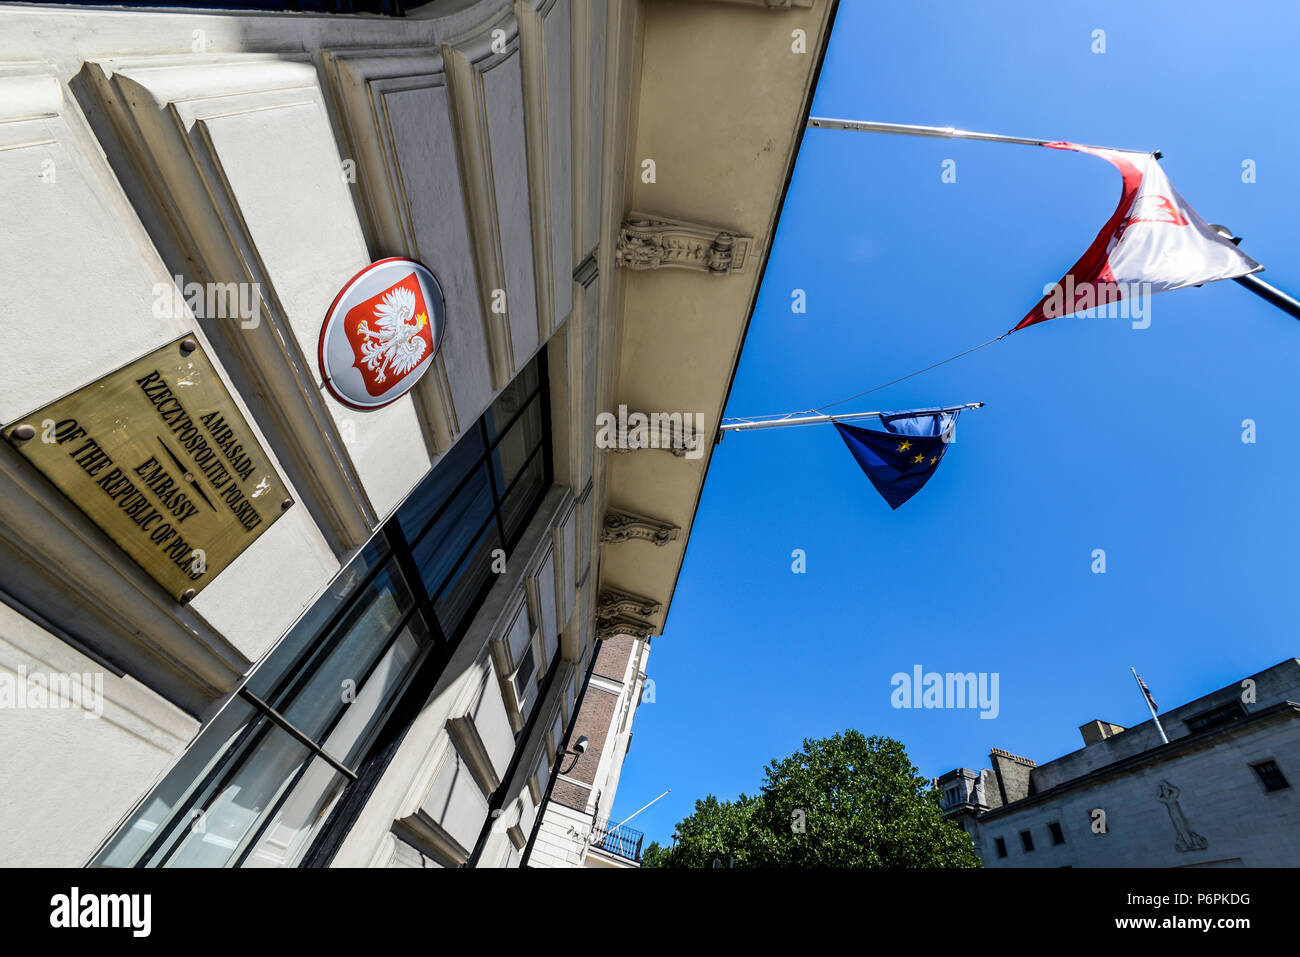 Polnische Botschaft in London. Botschaft der Republik Polen in Portland Place, London, Großbritannien. Wappen und Flagge Stockfoto